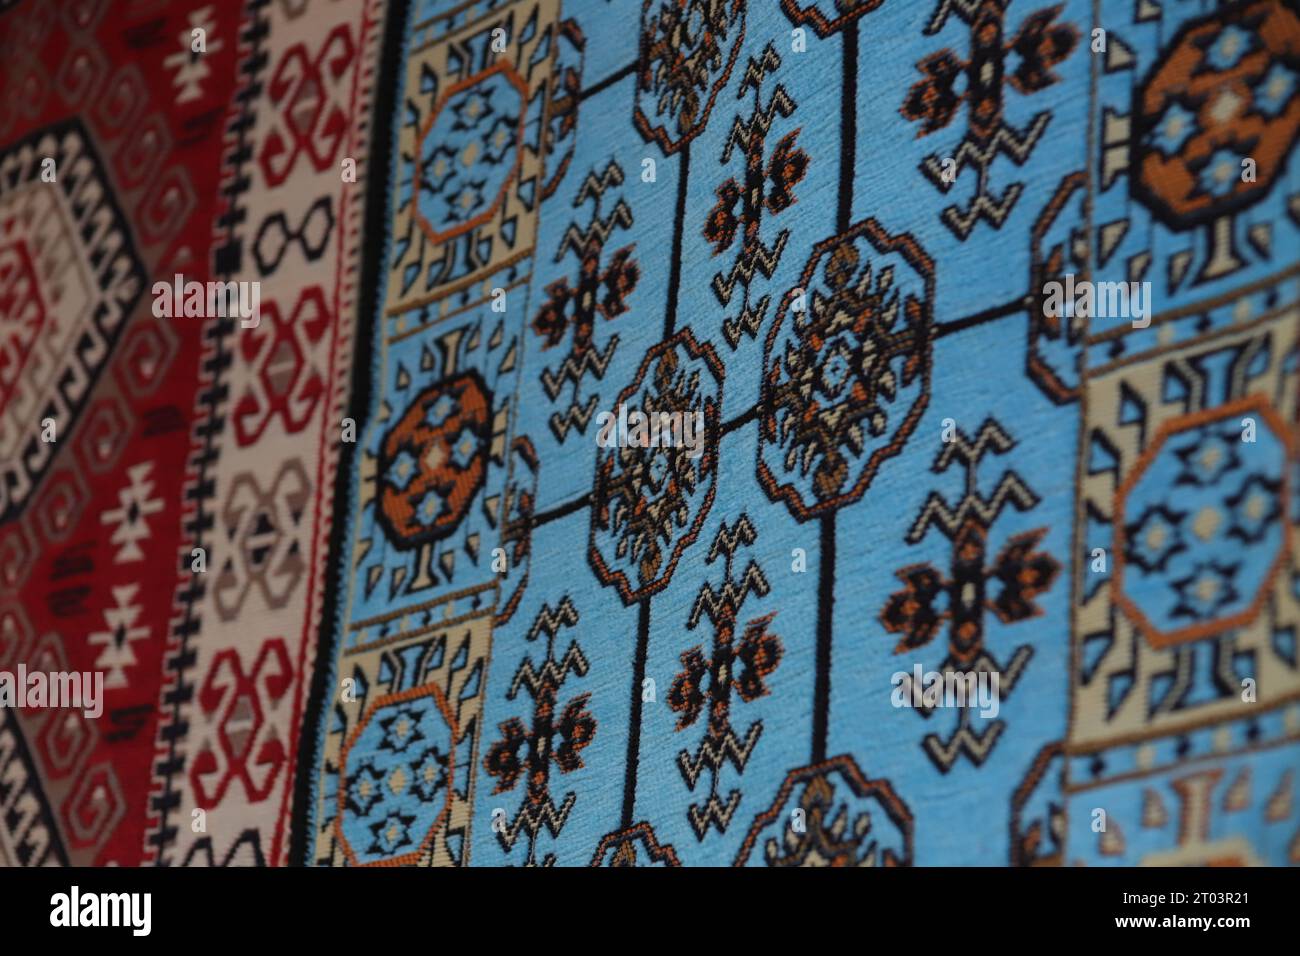 Zwei wunderschöne, mit ethnischen Mustern versehene Teppiche, ein blauer und ein roter Teppich, hängen an einer Wand, die in den Straßen des Gjirokaster Baazar in Albanien ausgestellt wird. Stockfoto